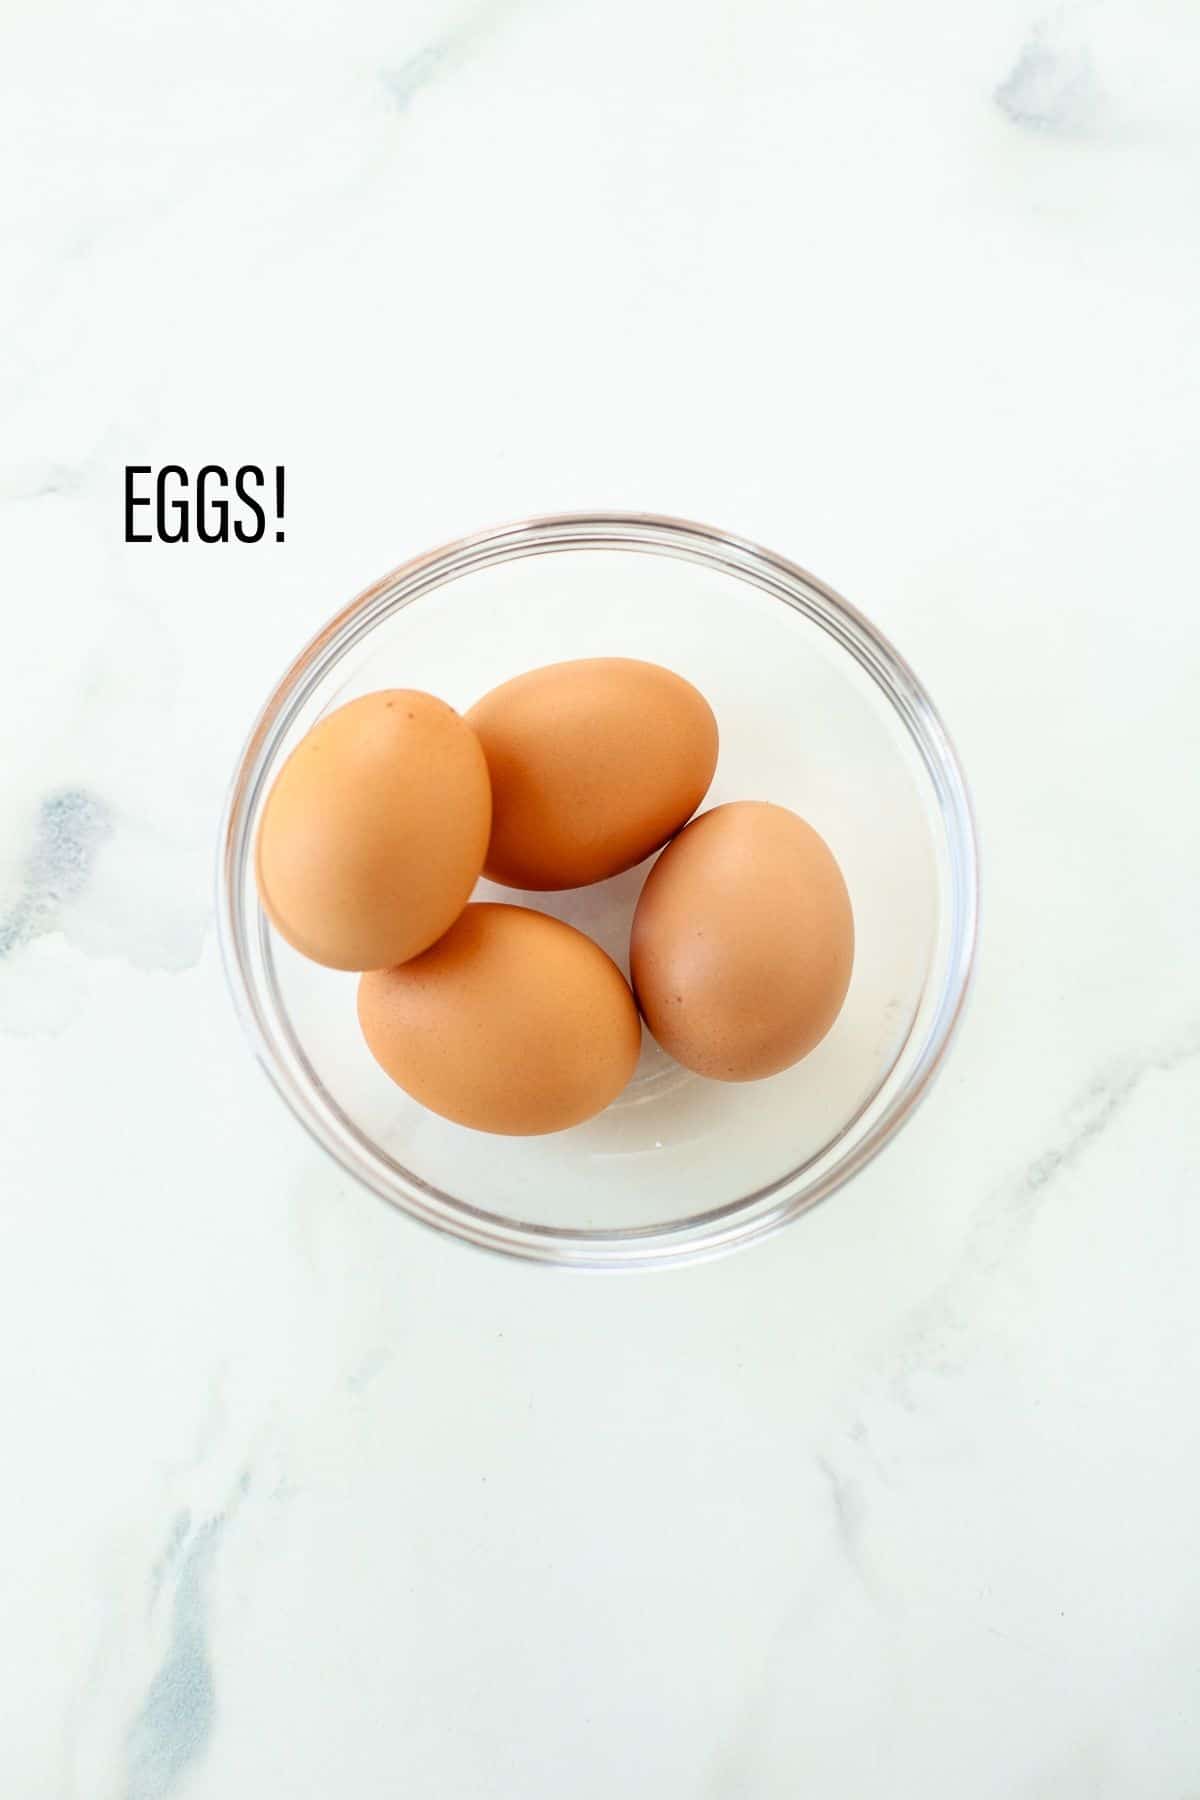 مواد لازم: تخم مرغ در یک کاسه شفاف، زمینه سفید